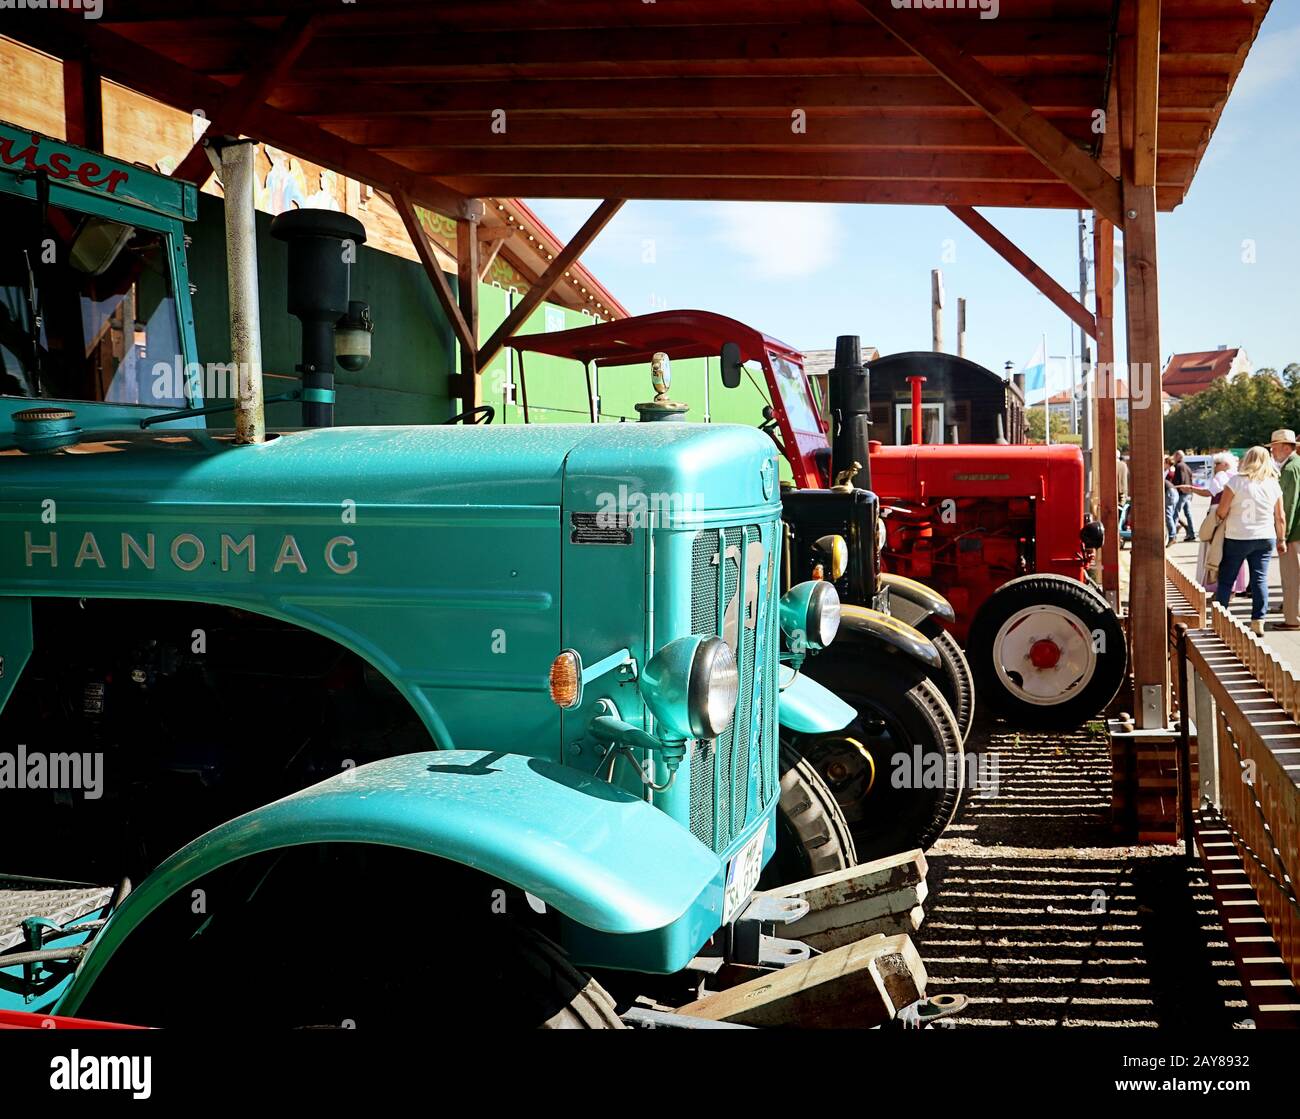 Munich, ALLEMAGNE un tracteur d'époque Hanomag est exposé à l'Oide Wiesn, partie historique de l'Oktoberfest à Munich, un environnement familial et convivial pour les enfants. Banque D'Images